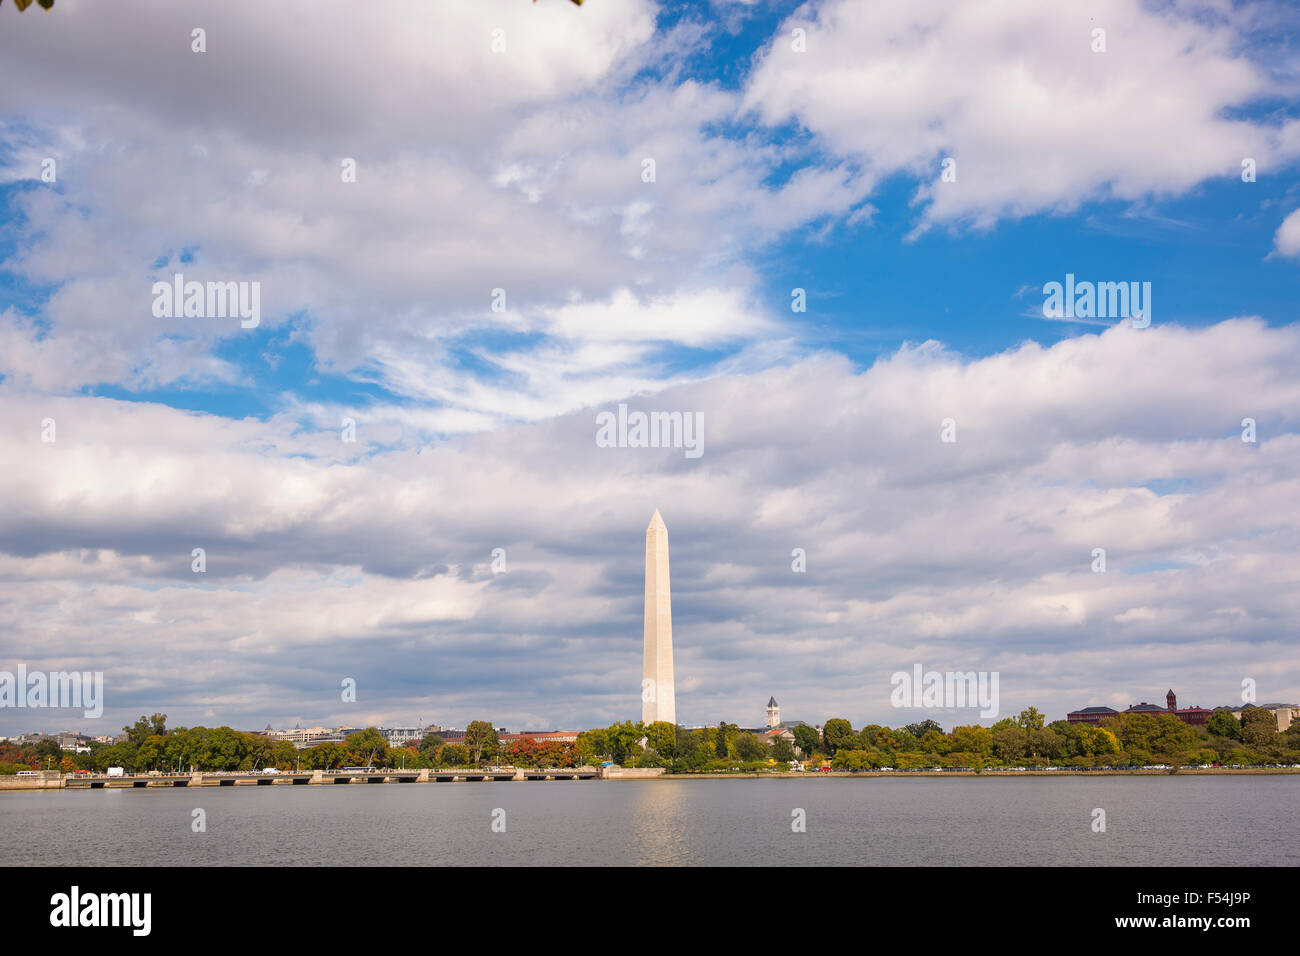 WASHINGTON, DC, USA - Washington monument and Tidal Basin. Stock Photo